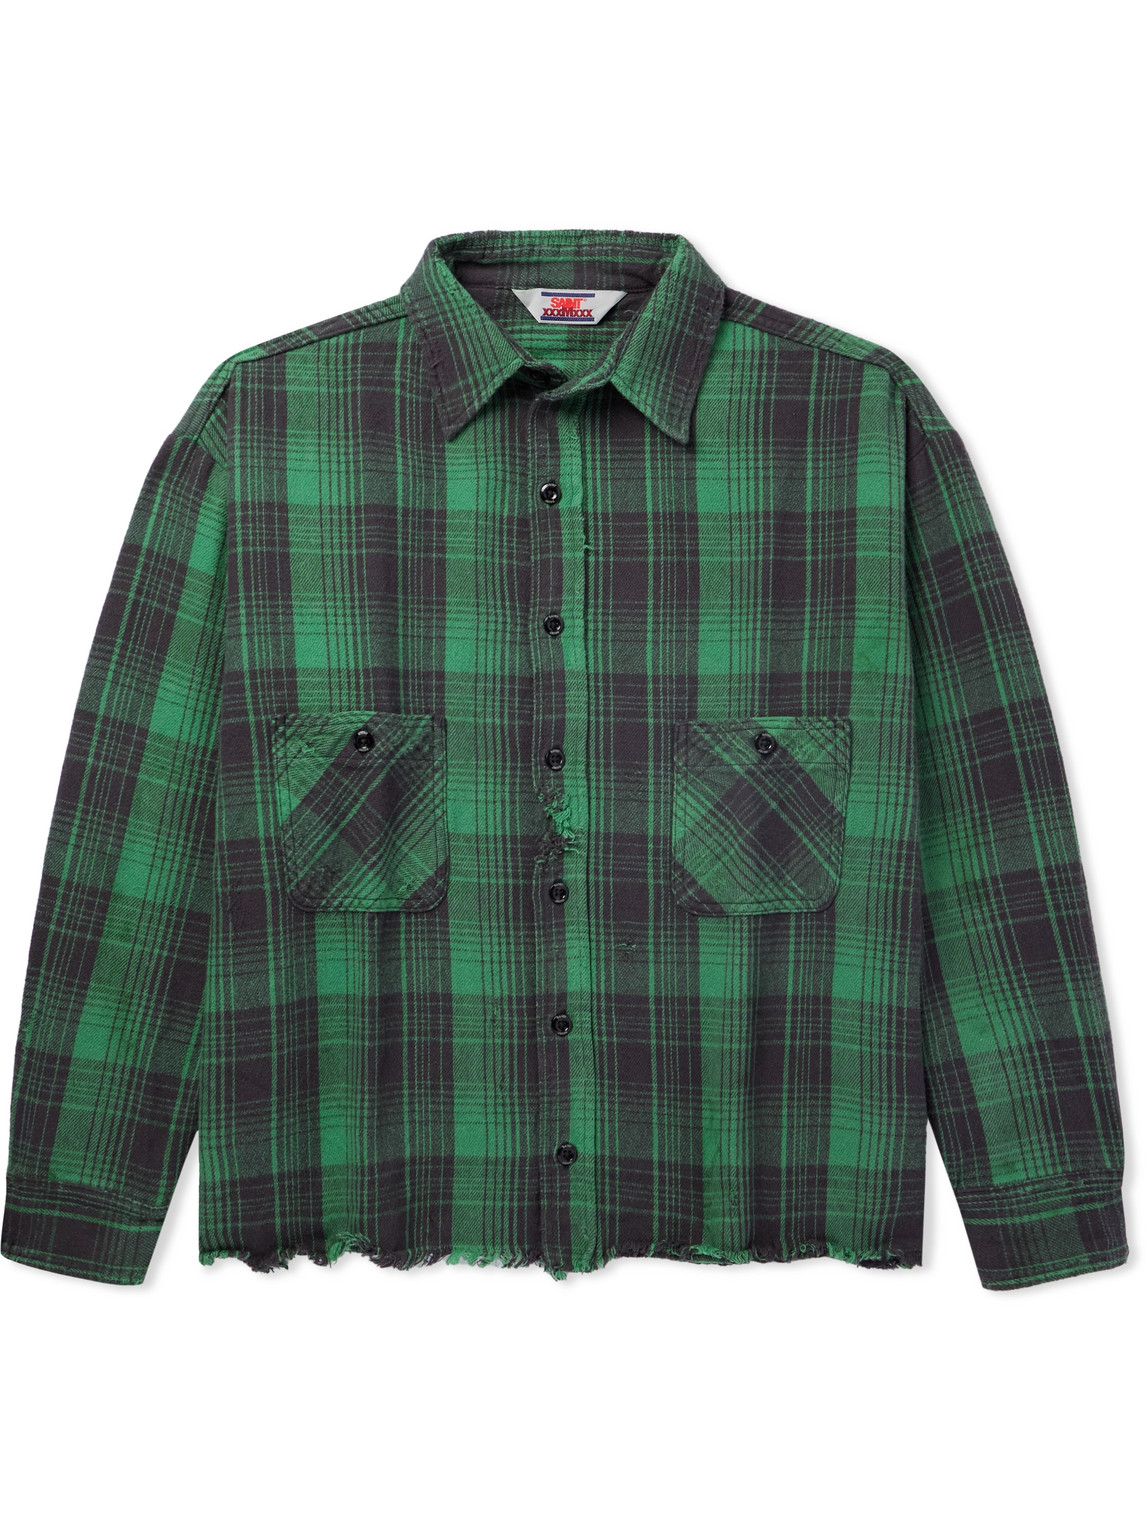 SAINT Mxxxxxx - Distressed Checked Cotton-Flannel Shirt - Men - Green - L von SAINT Mxxxxxx